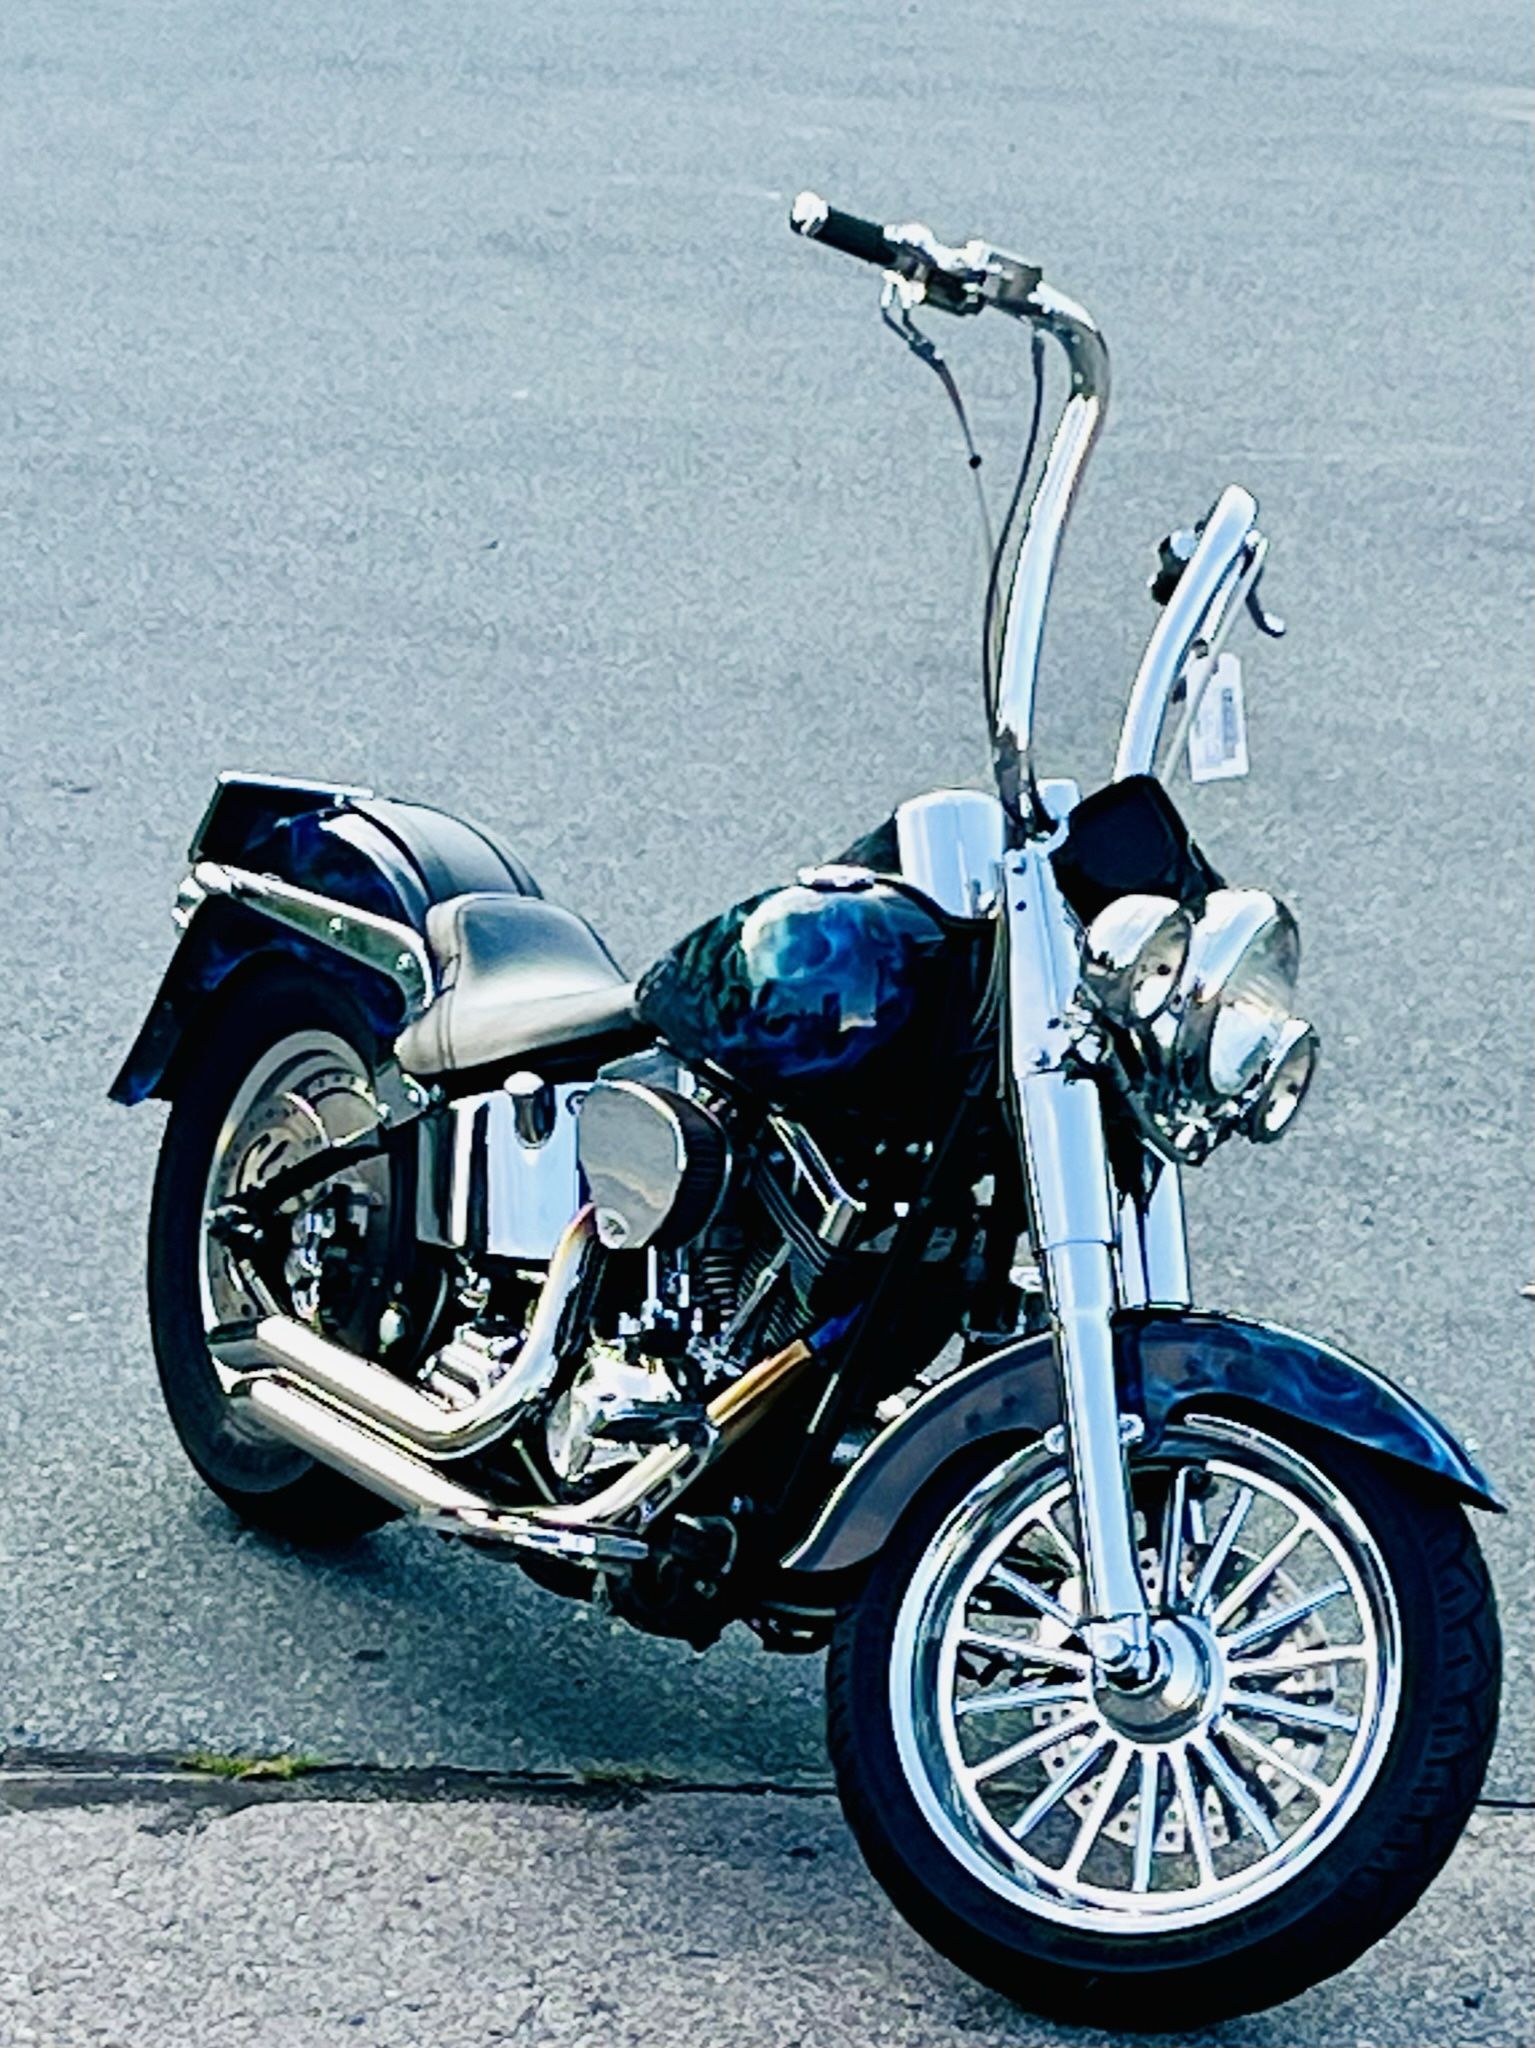 2004 Harley Davidson Soft tail fat boy